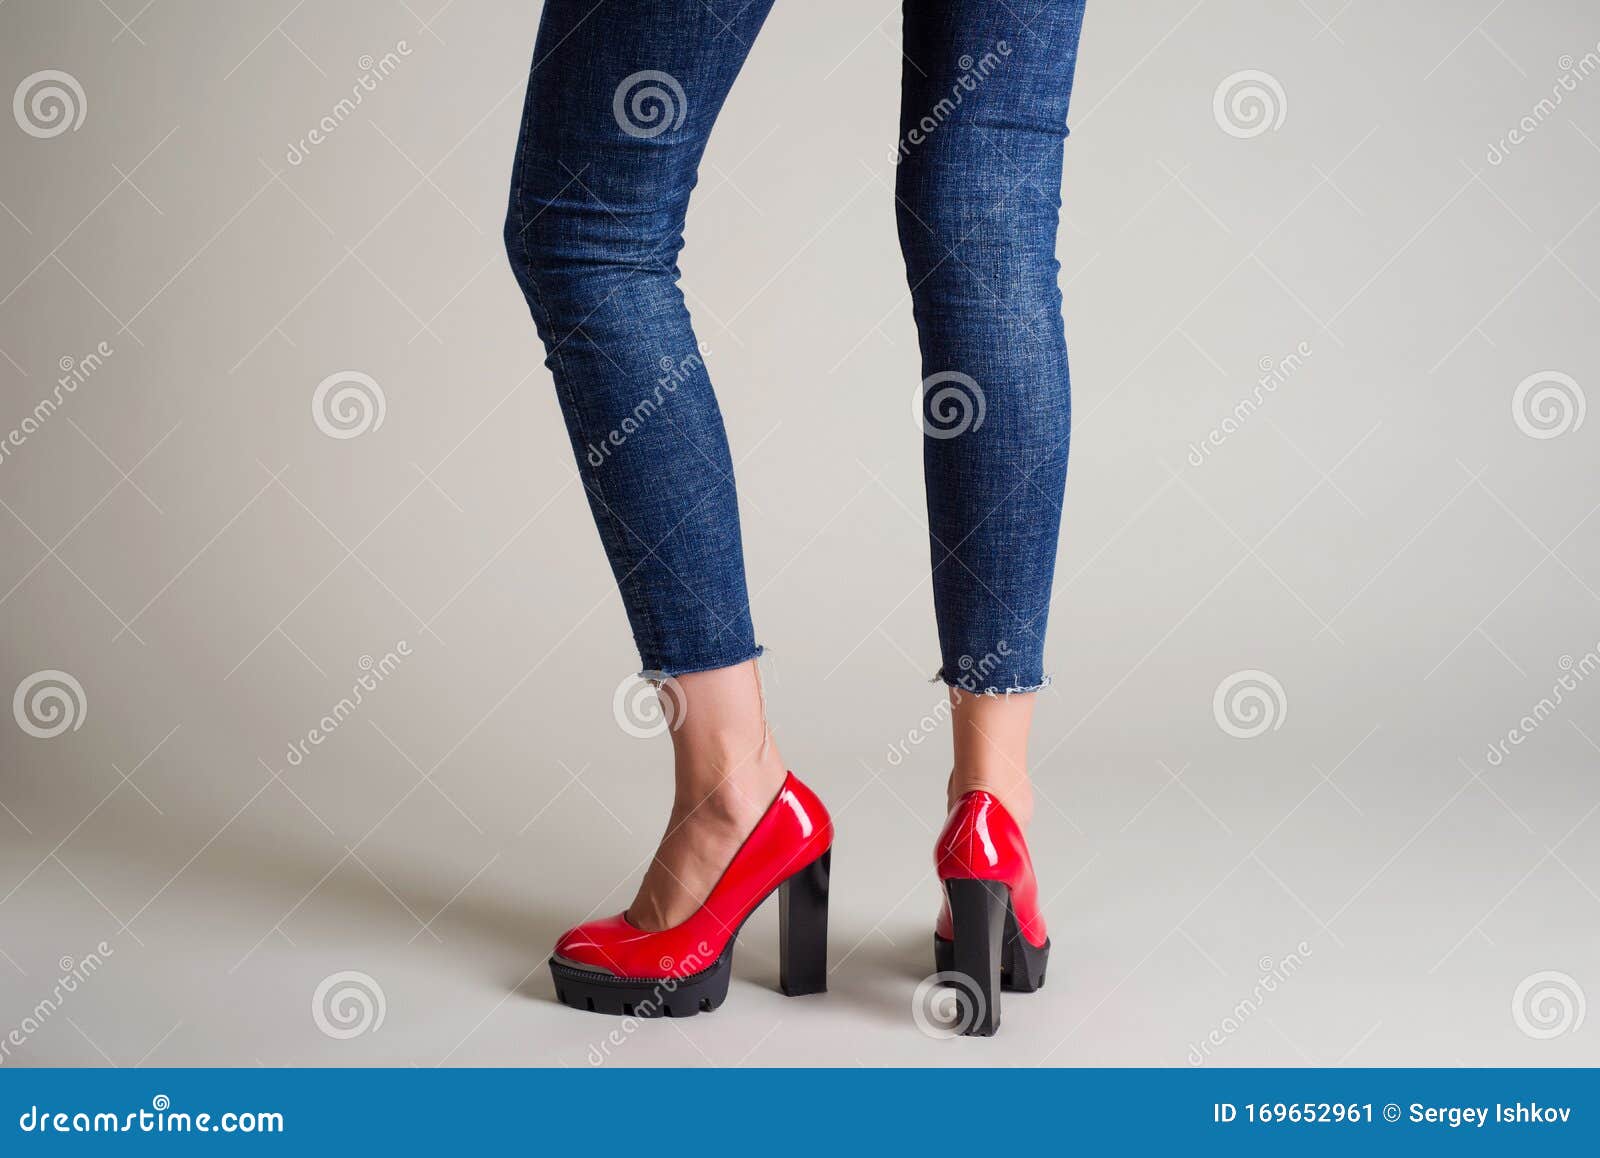 Magnético demandante Velo Mujer En Jeans Zapatos Rojos Con Tacones Negros Posando Sobre Un Fondo Gris  Imagen de archivo - Imagen de pantalones, zapato: 169652961